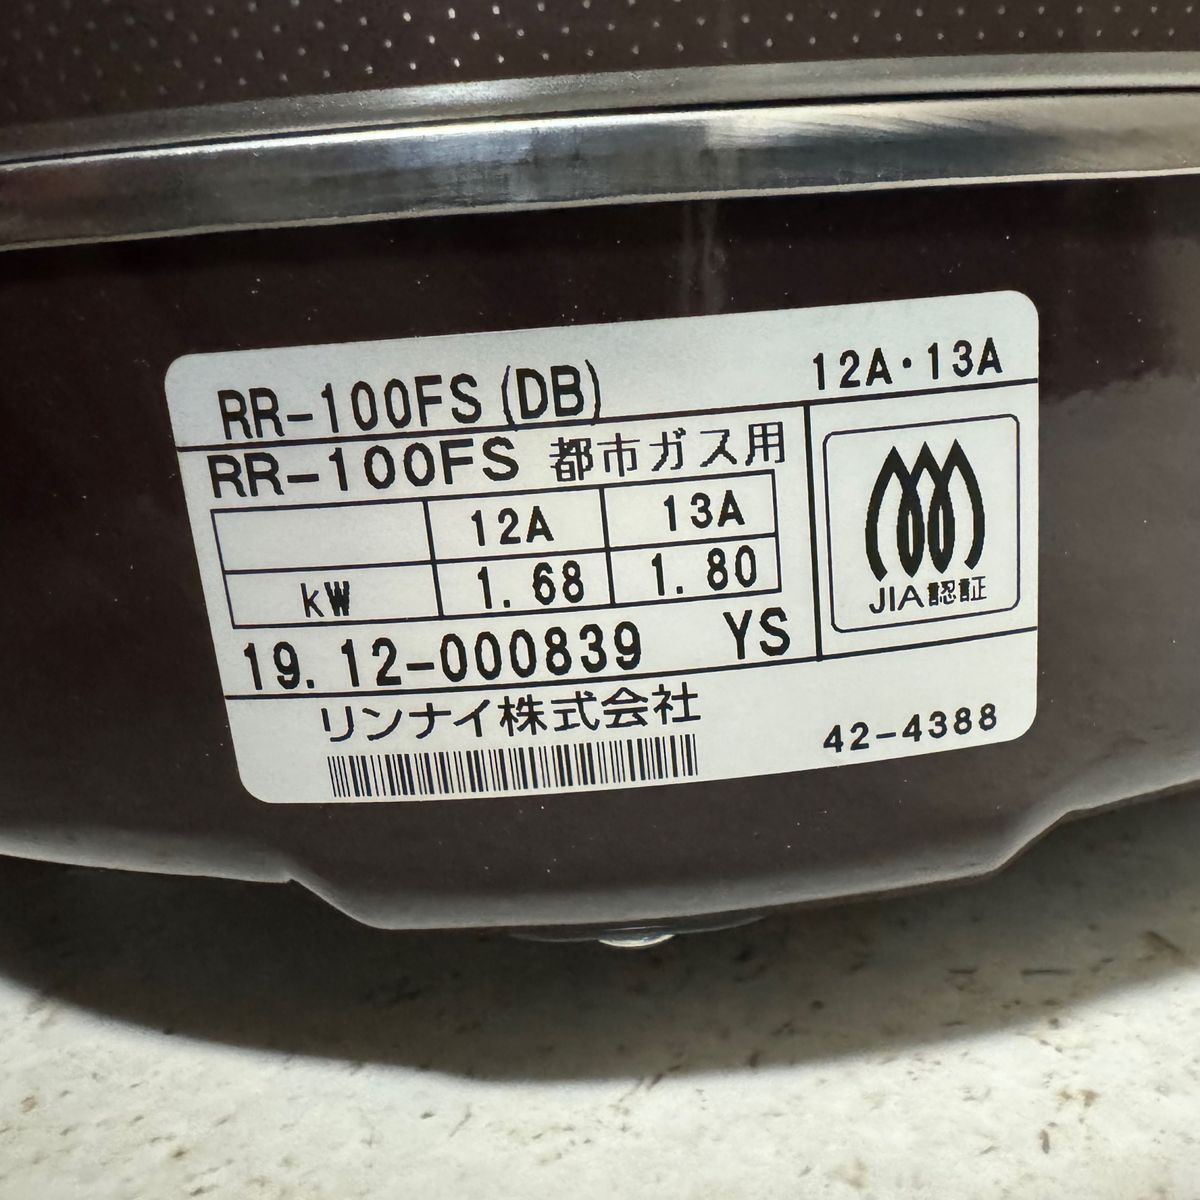 リンナイ ガス炊飯器 「こがまる」 1升 RR-100FS(DB) ブラウン 都市ガス用 RR-100FS(DB)